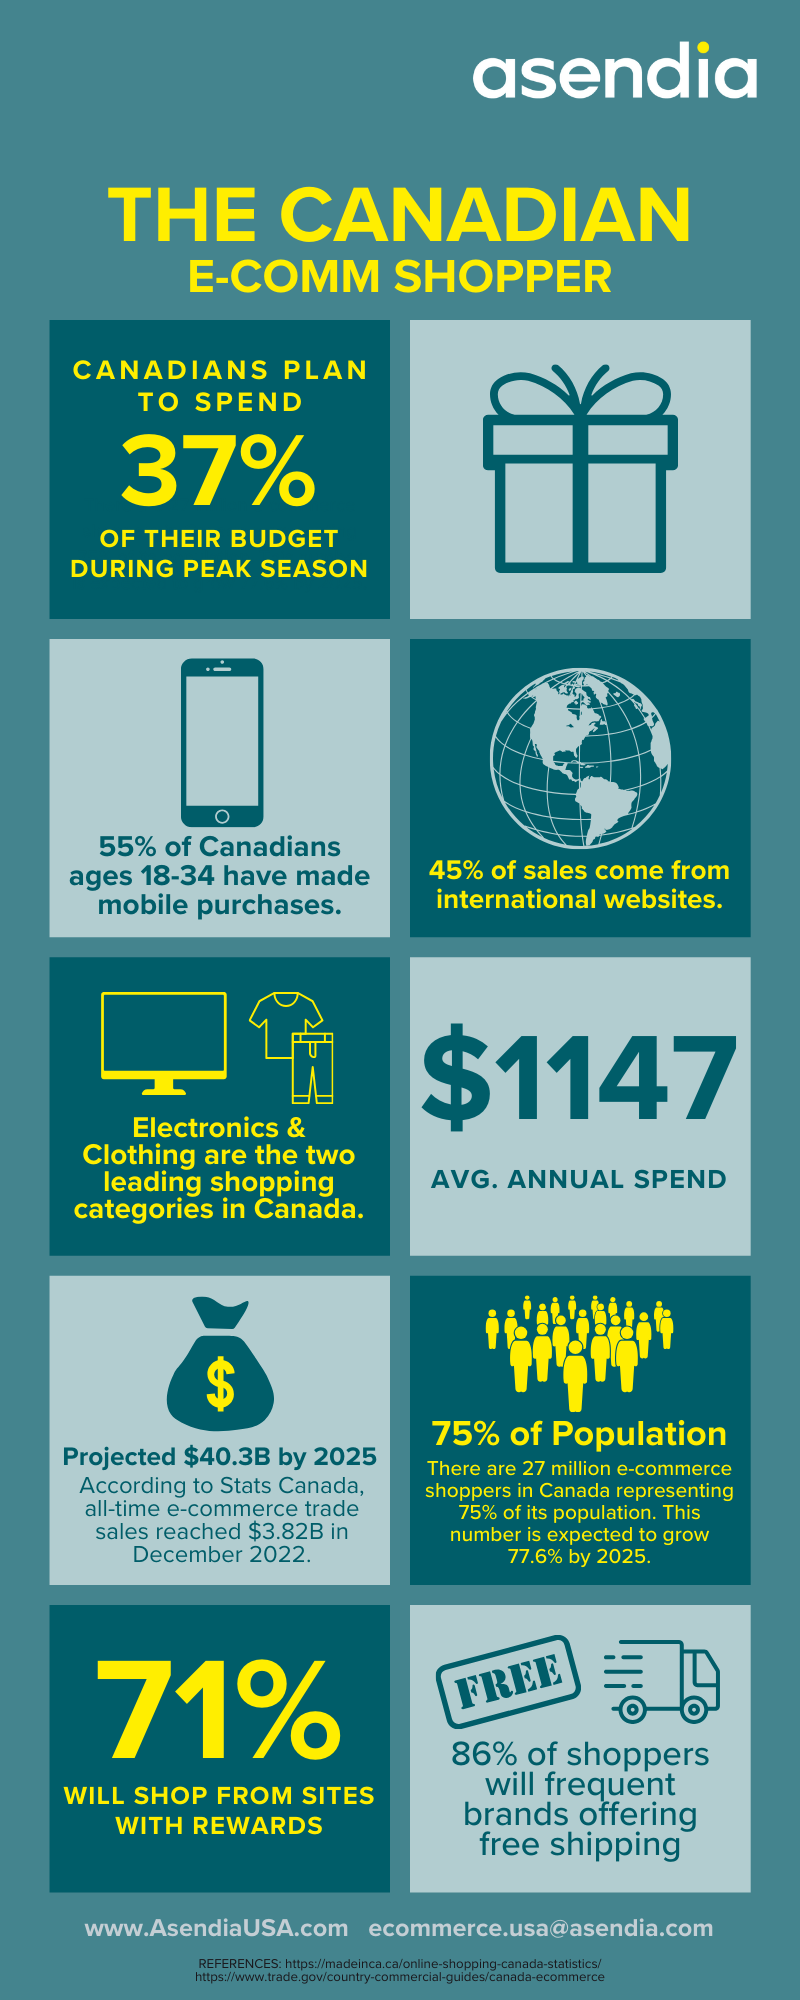 Canadian E-comm Shopper - infographic - Asendia USA